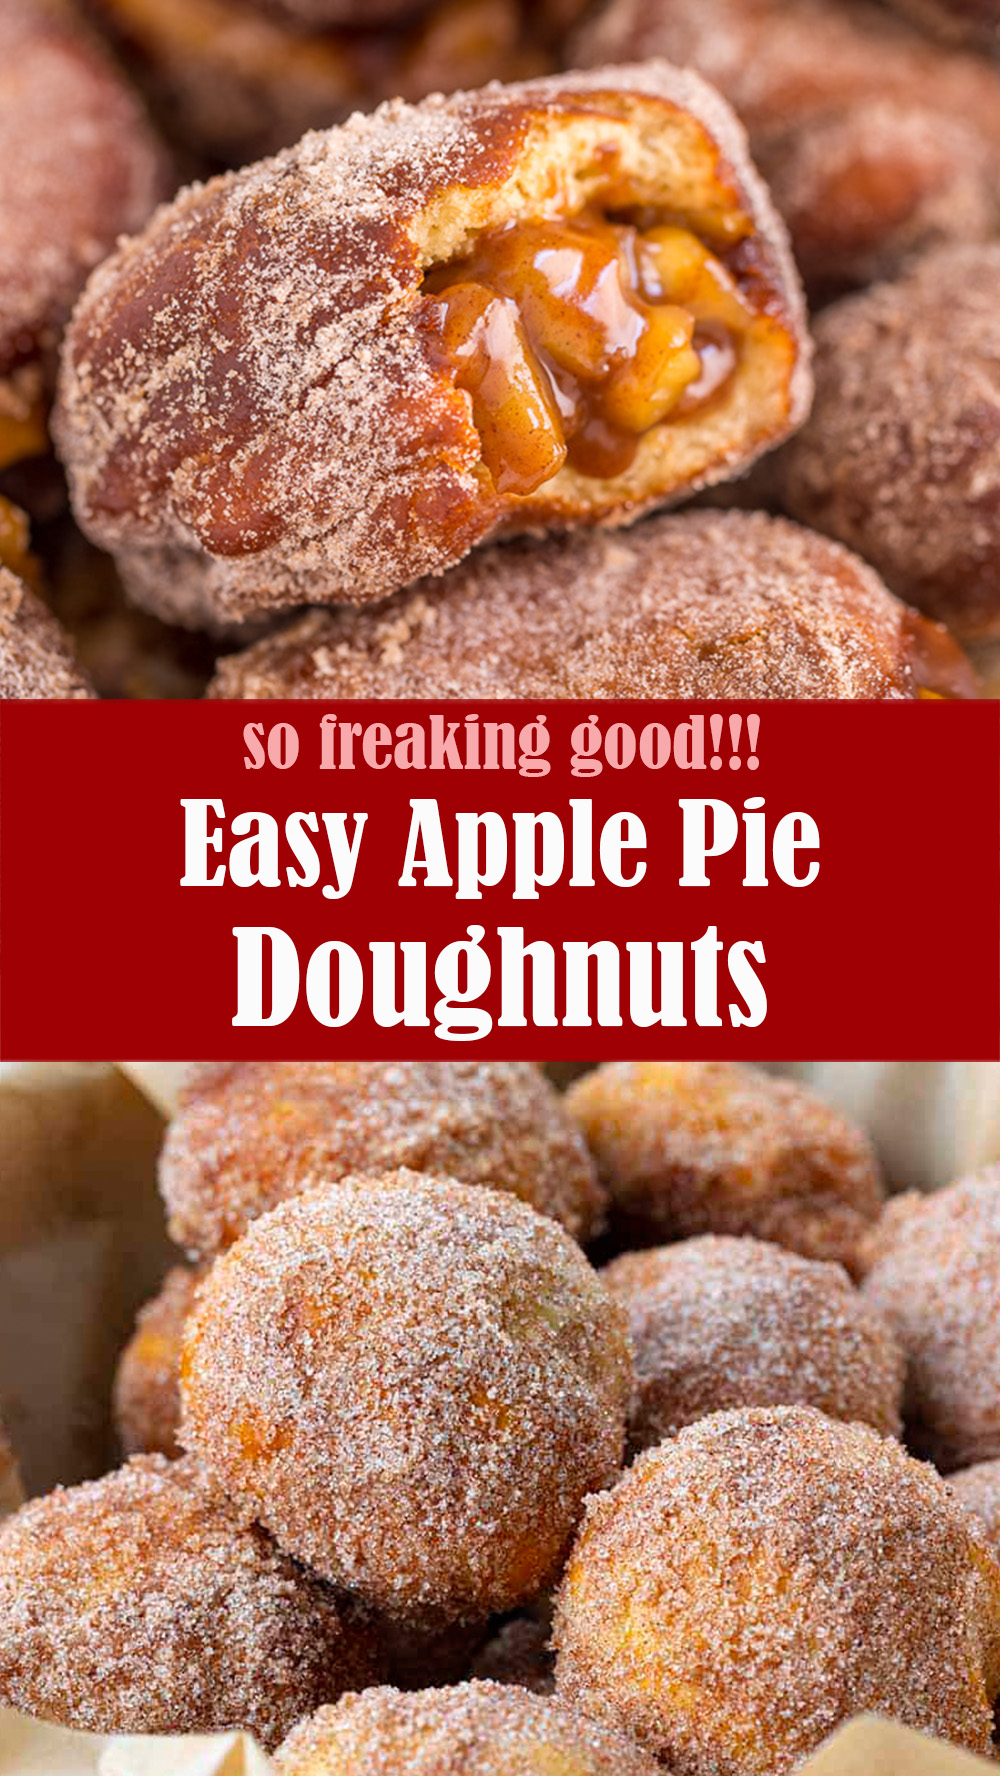 Easy Apple Pie Doughnuts